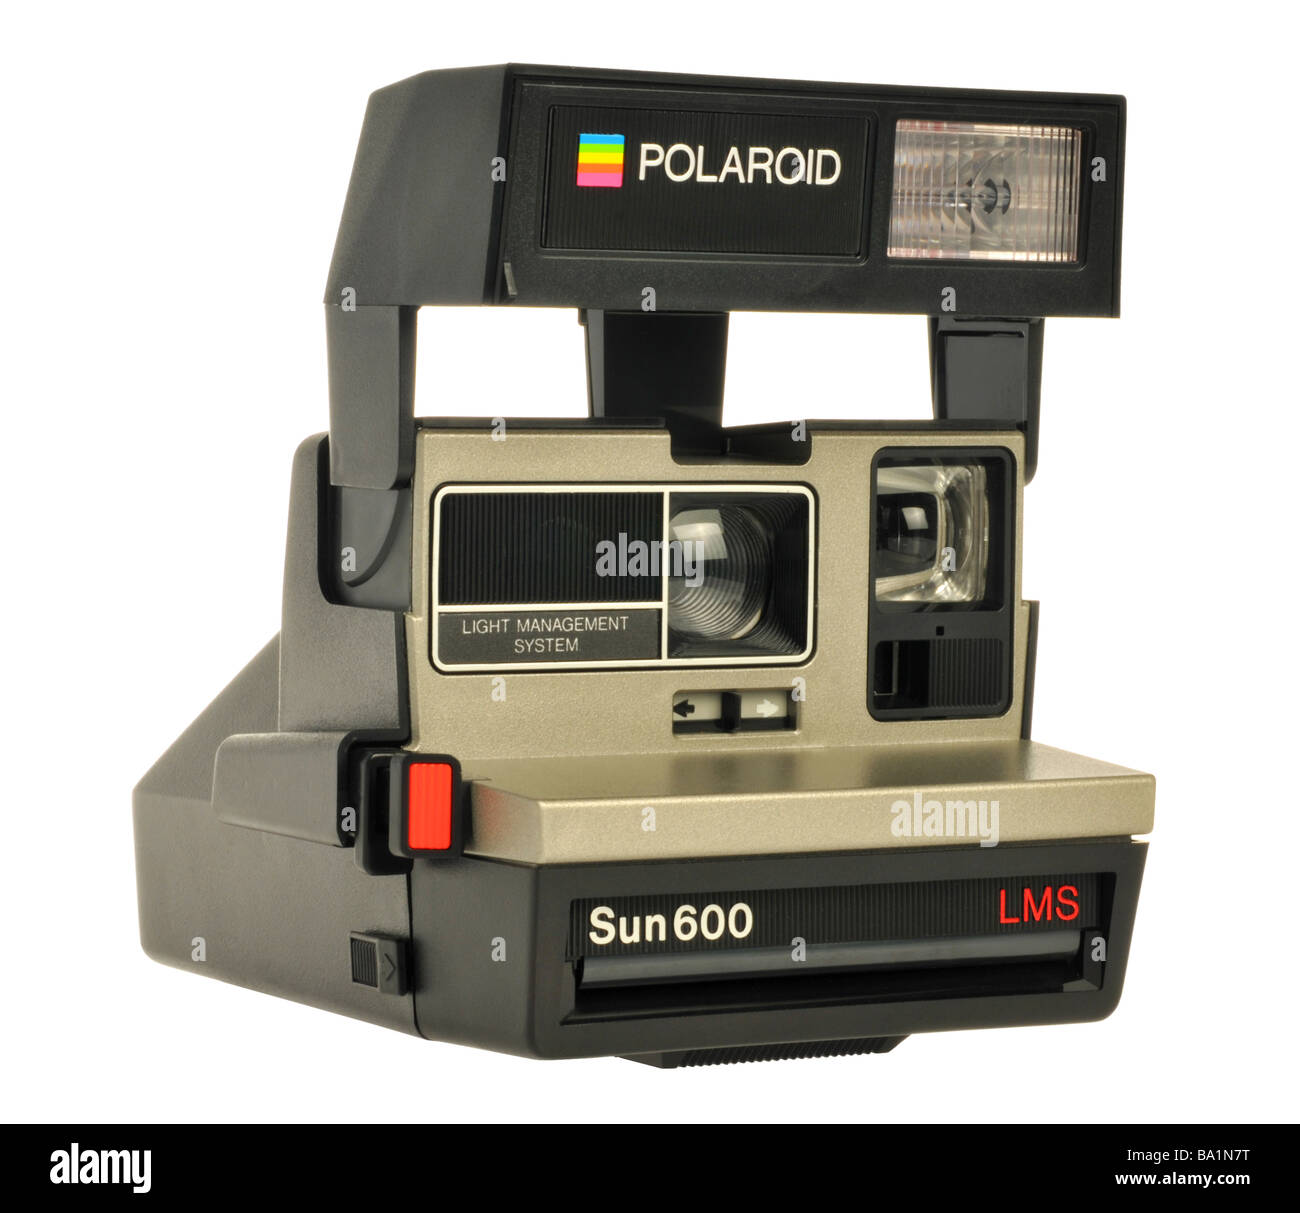 Polaroid camera Stock Photo